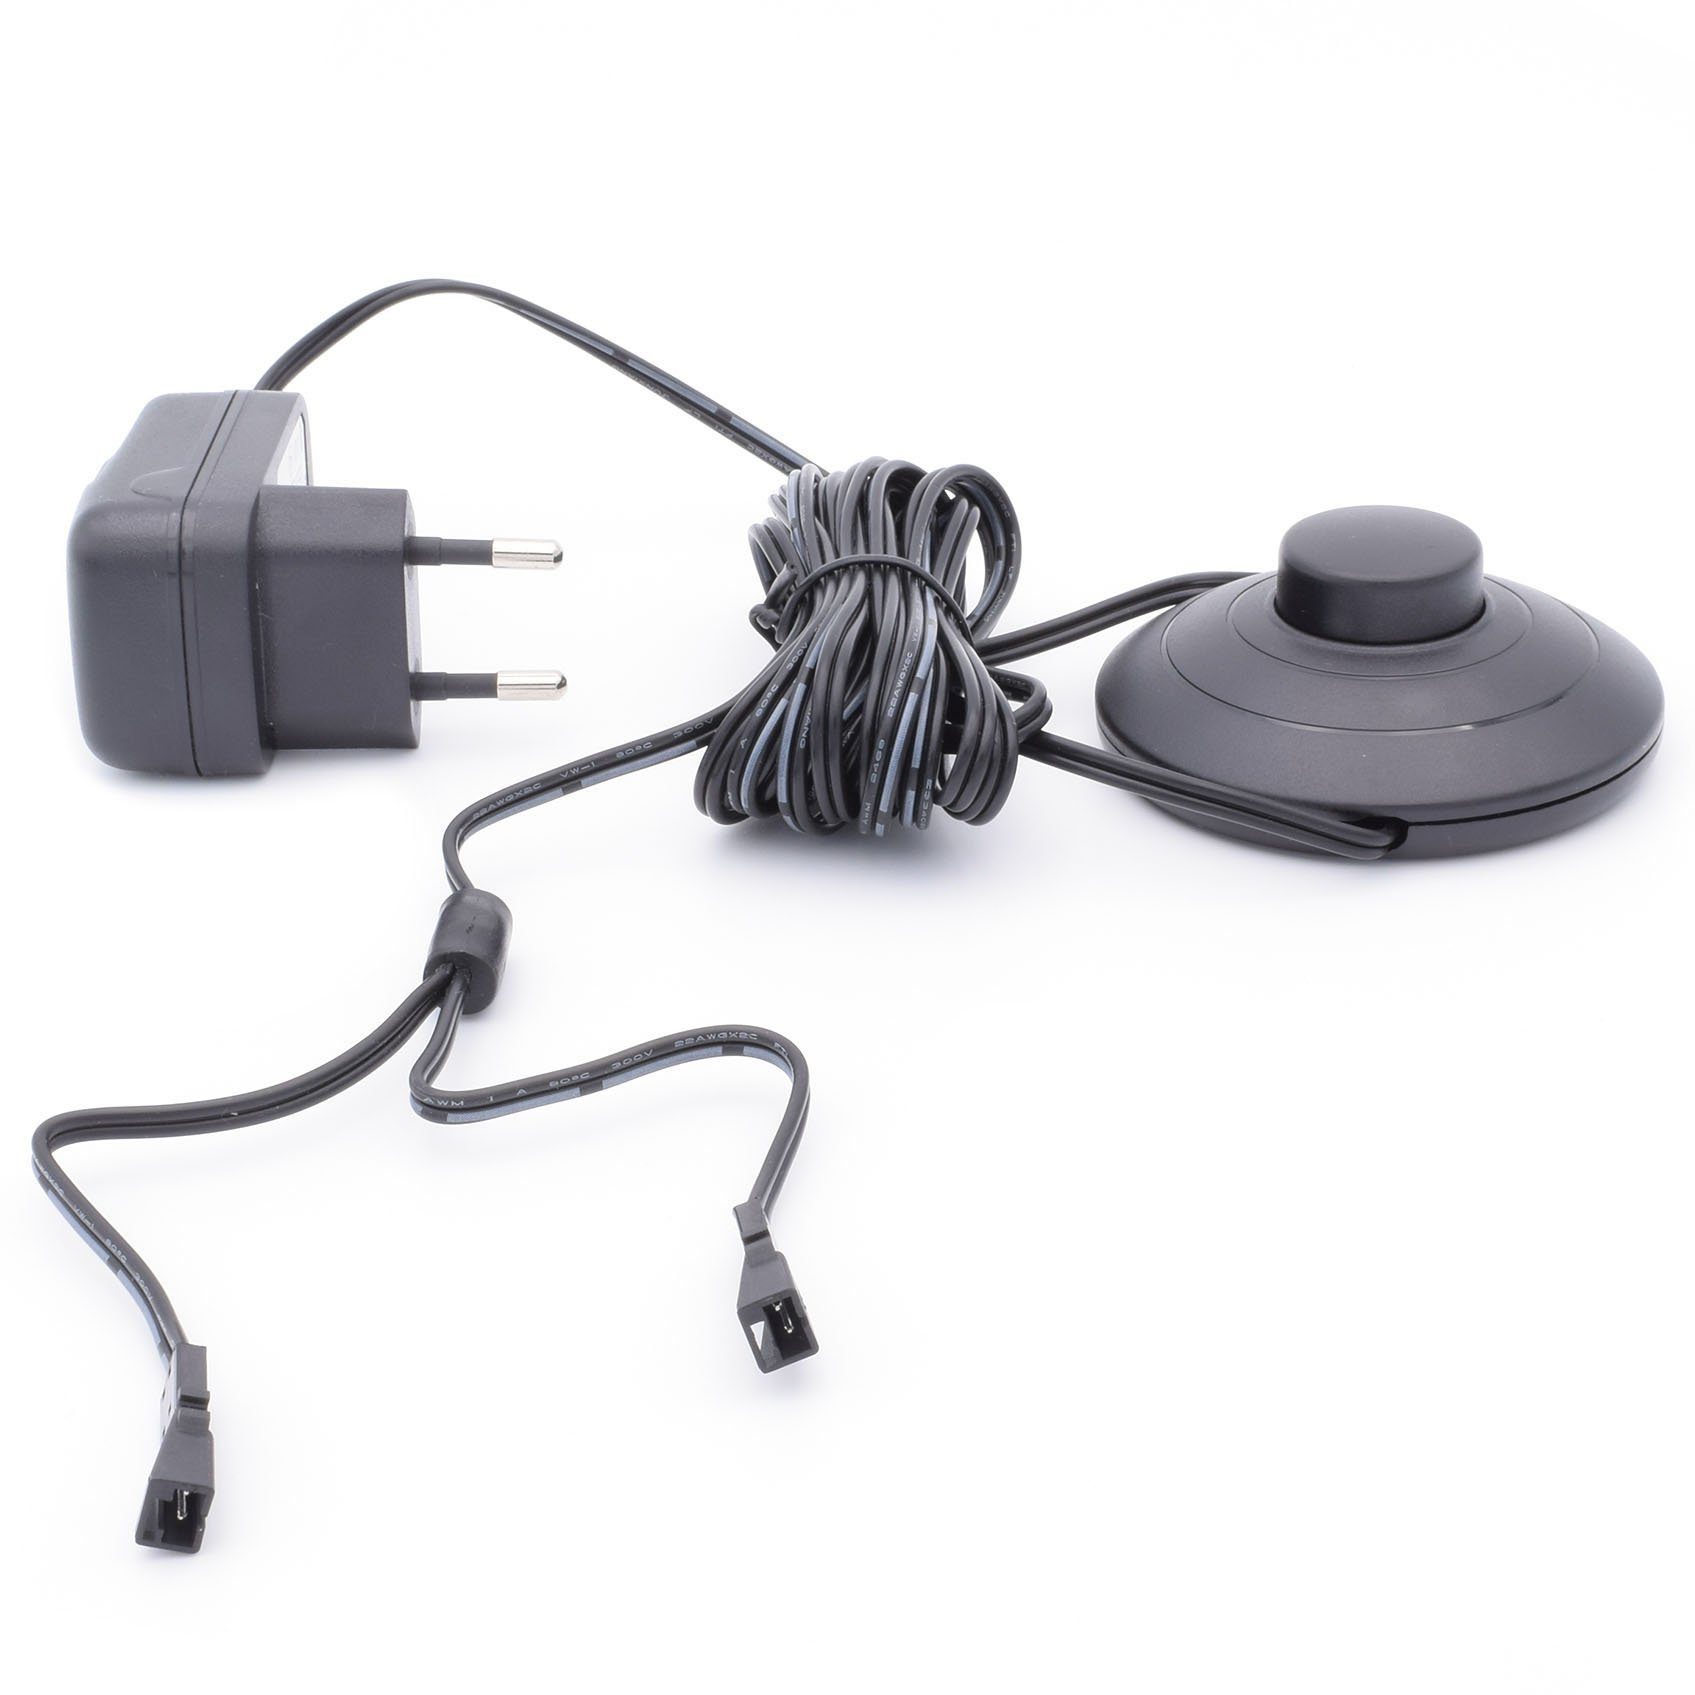 Yu (12V,6W,Trafo,SteckernetzteilmitFußschalter,2LEDKupplungen,Netzteil) Yang Fußschalter mit 6W Steckernetzteil Trafo LED